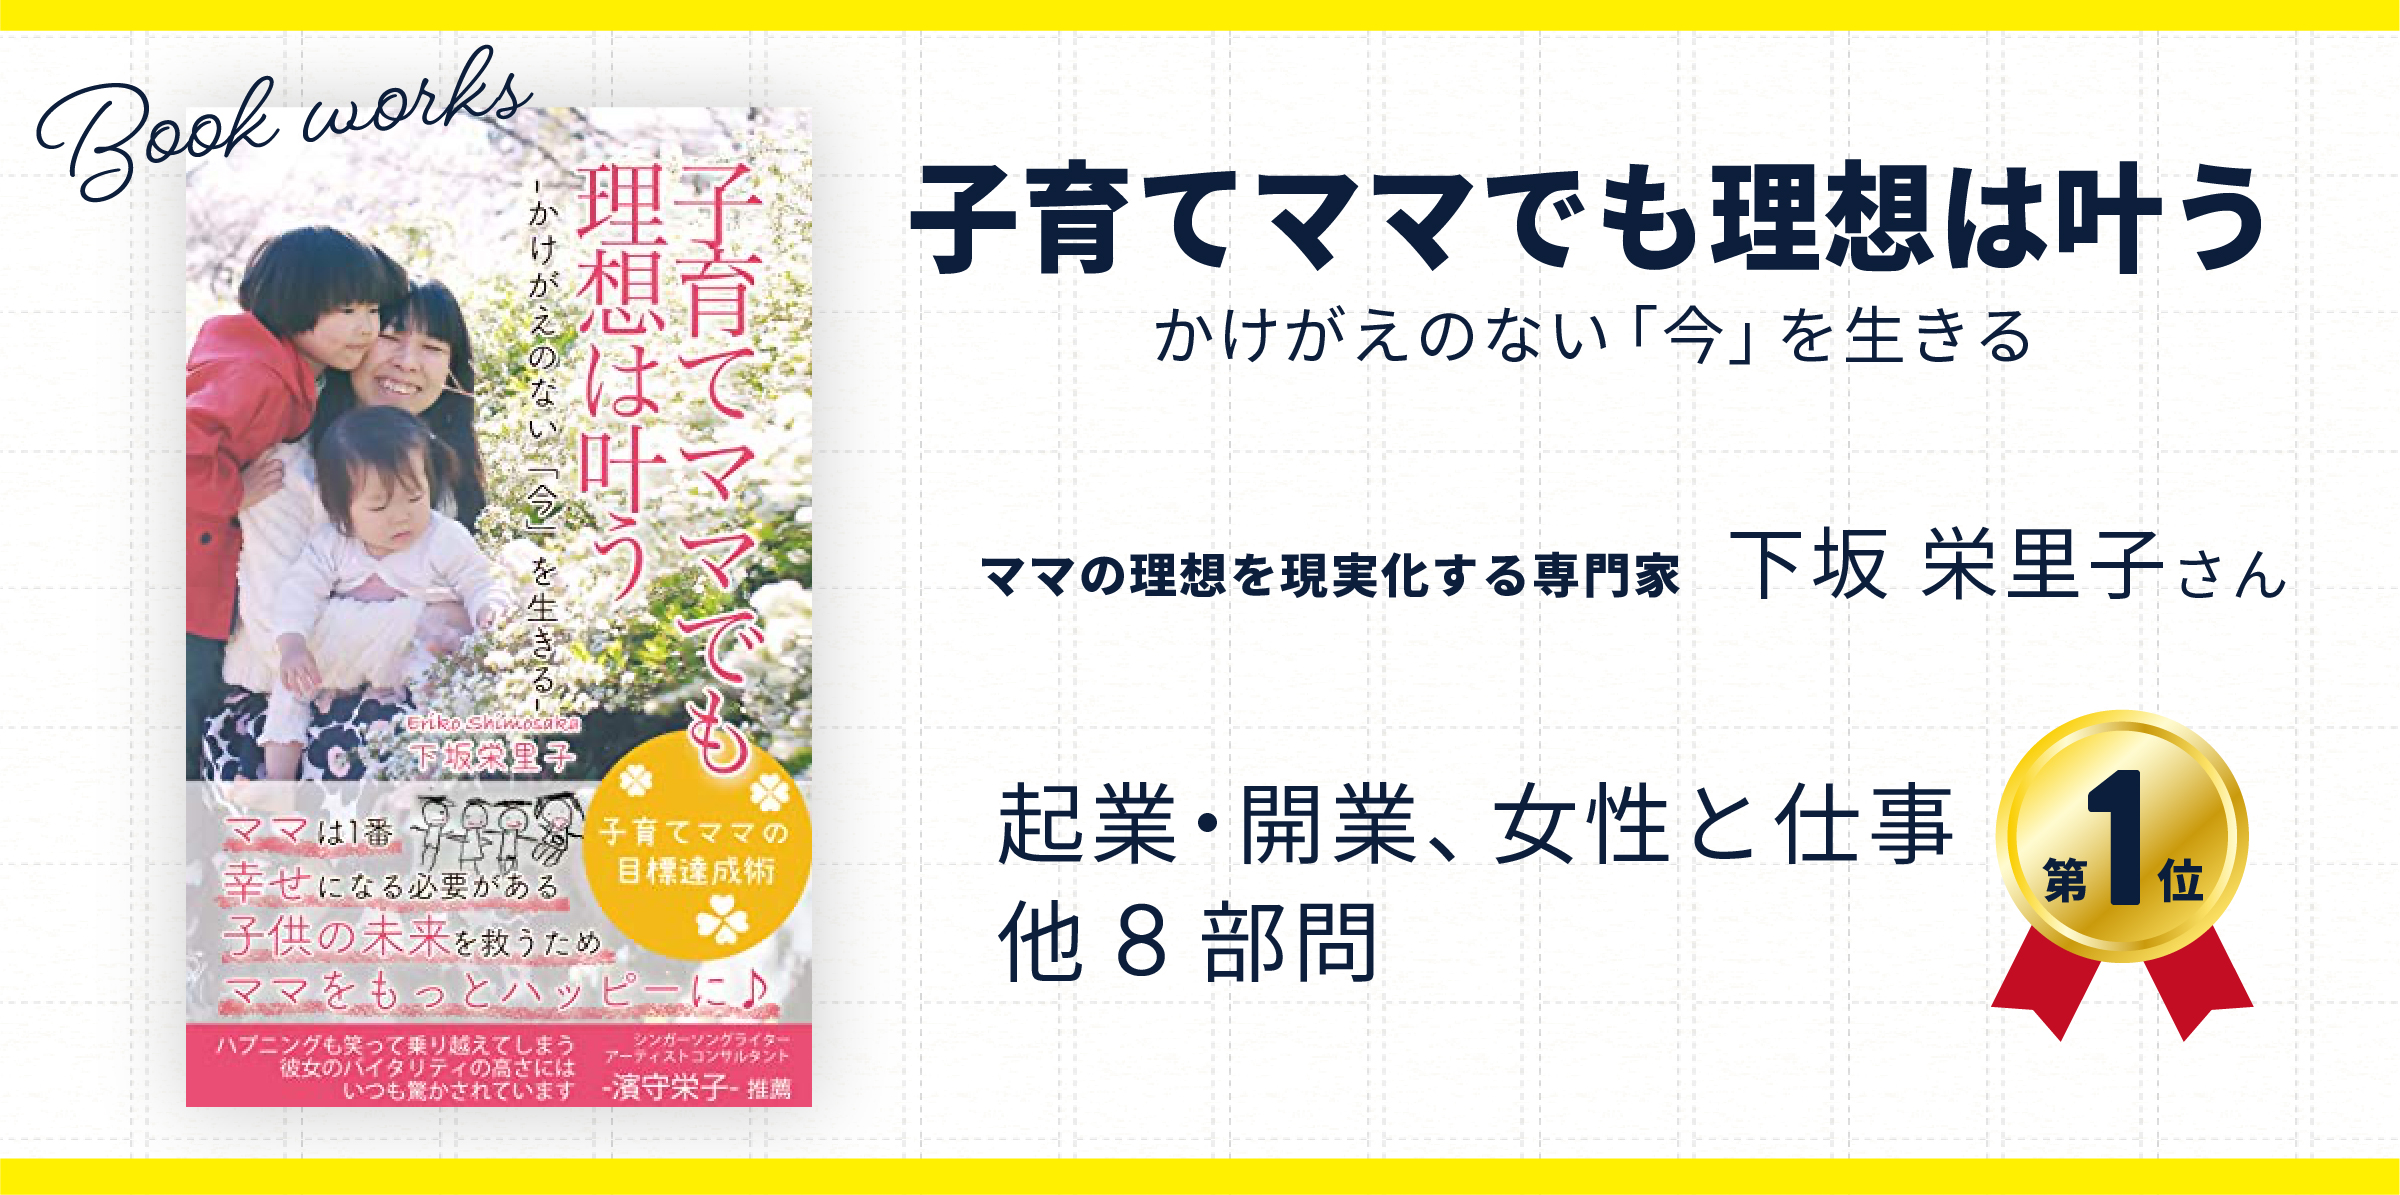 「下坂栄里子さん」の本が出版されました